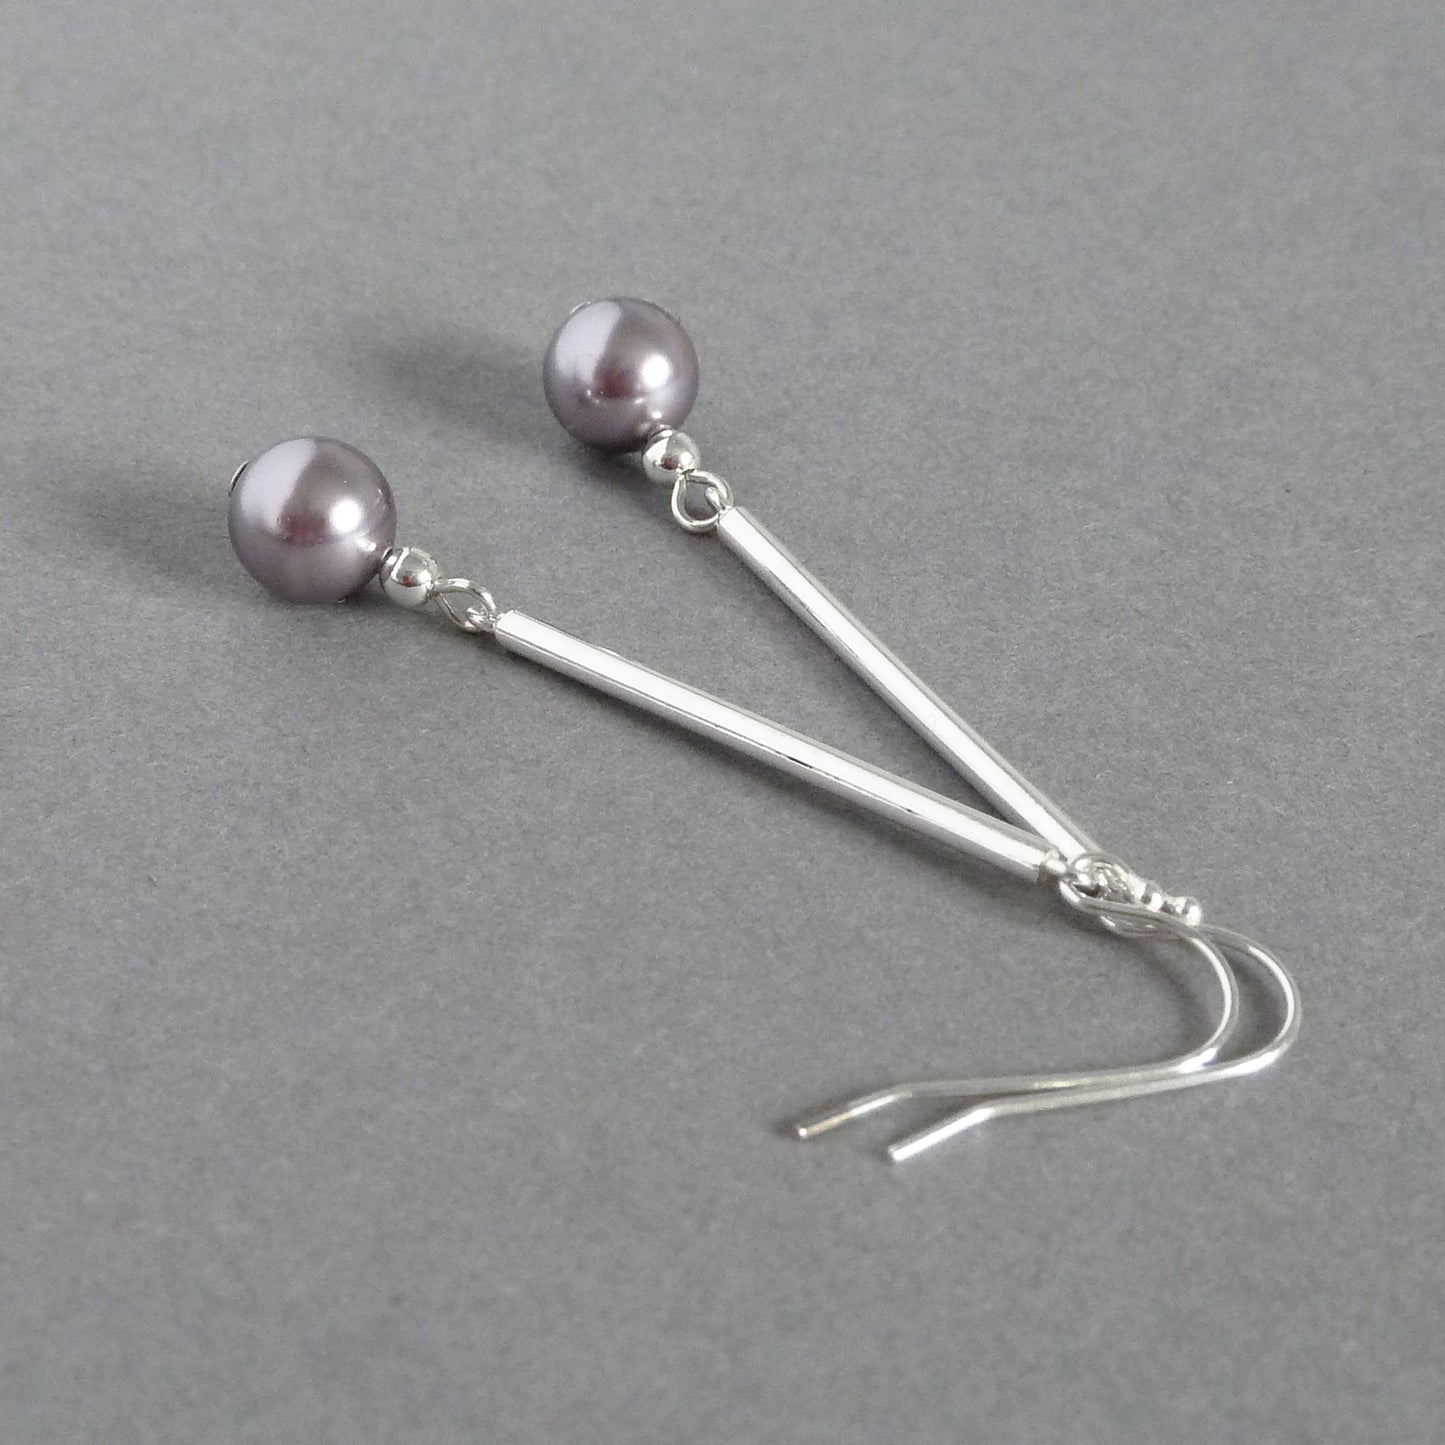 Pale purple pearl drop earrings